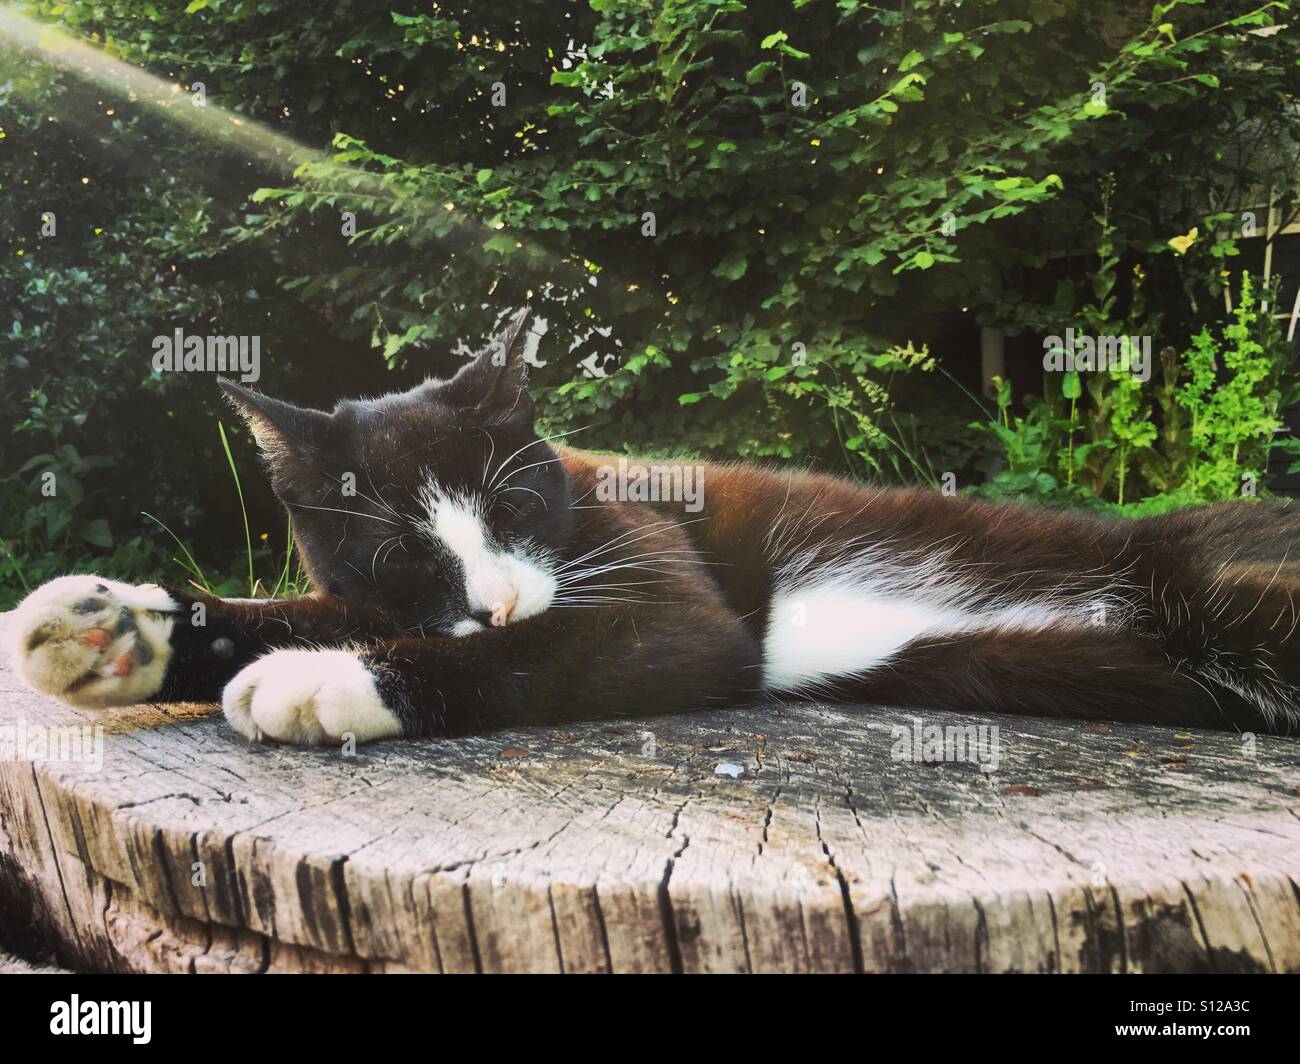 Tuxedo cat sleeping on a tree stump in a sunbeam Stock Photo